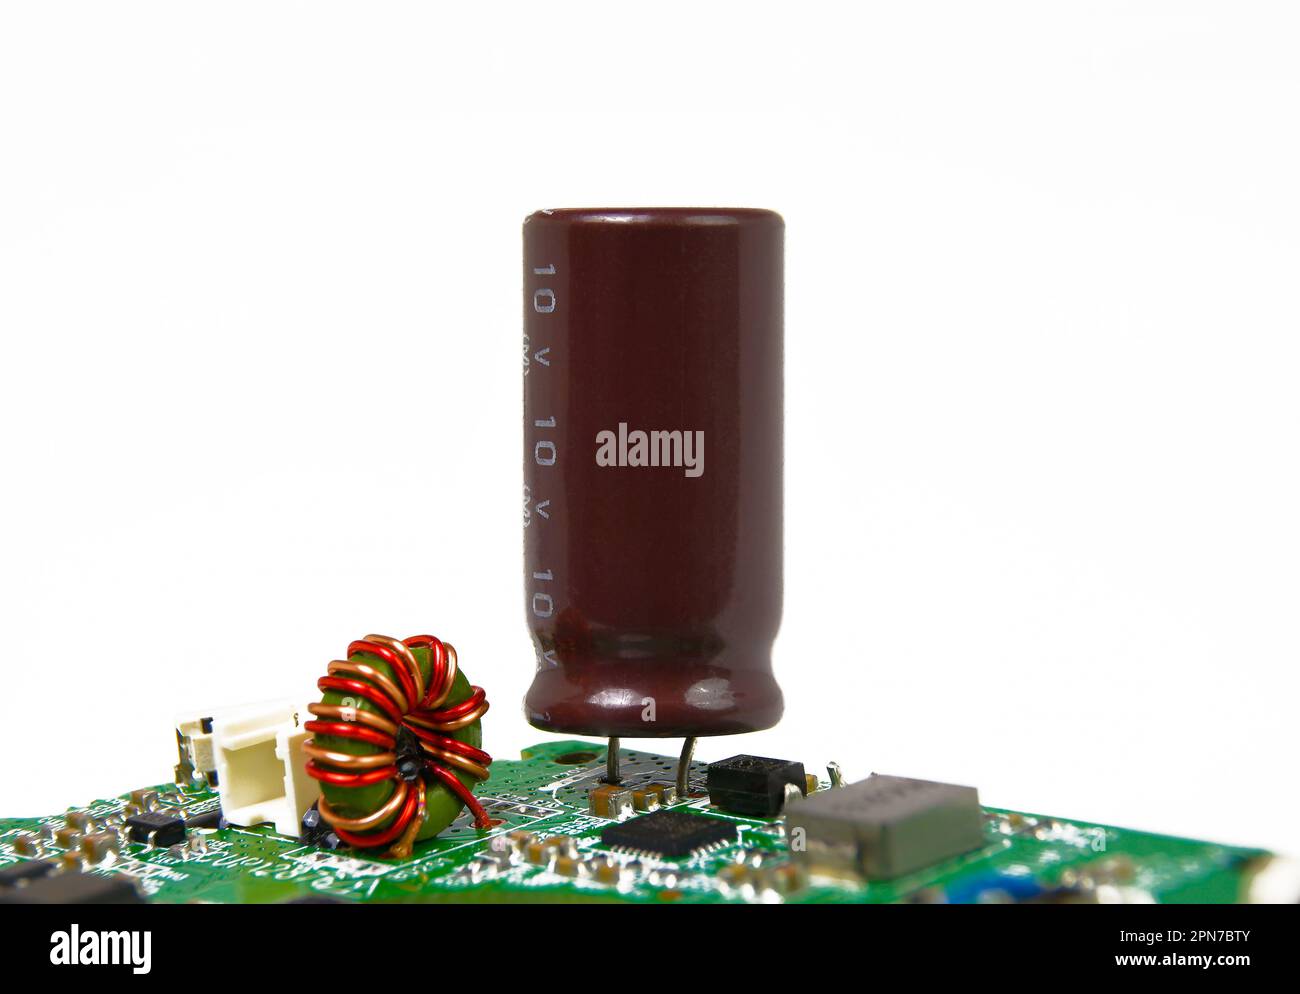 Condensadores electrolíticos sobre un fondo blanco Fotografía de stock -  Alamy